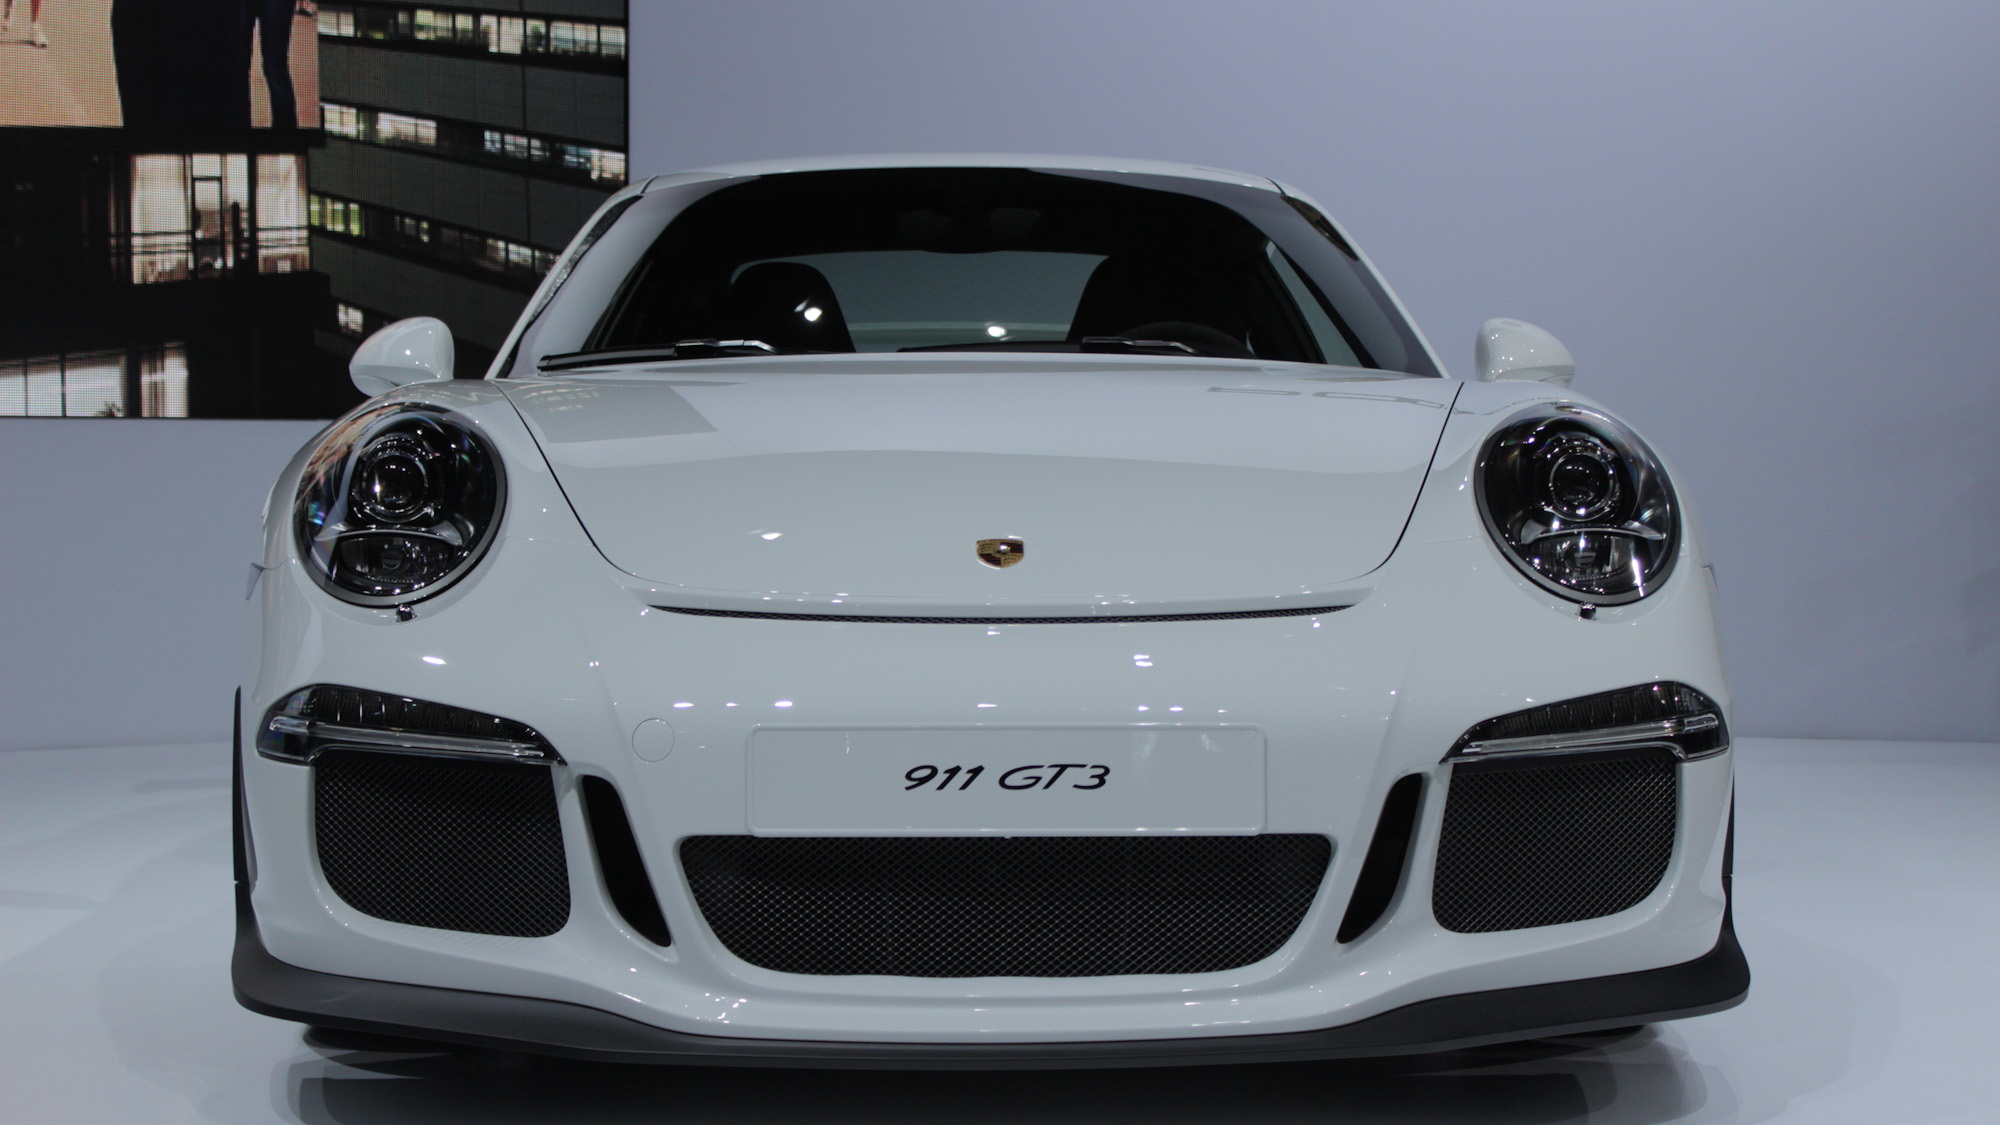 2014 Porsche 911 GT3, 2013 New York Auto Show